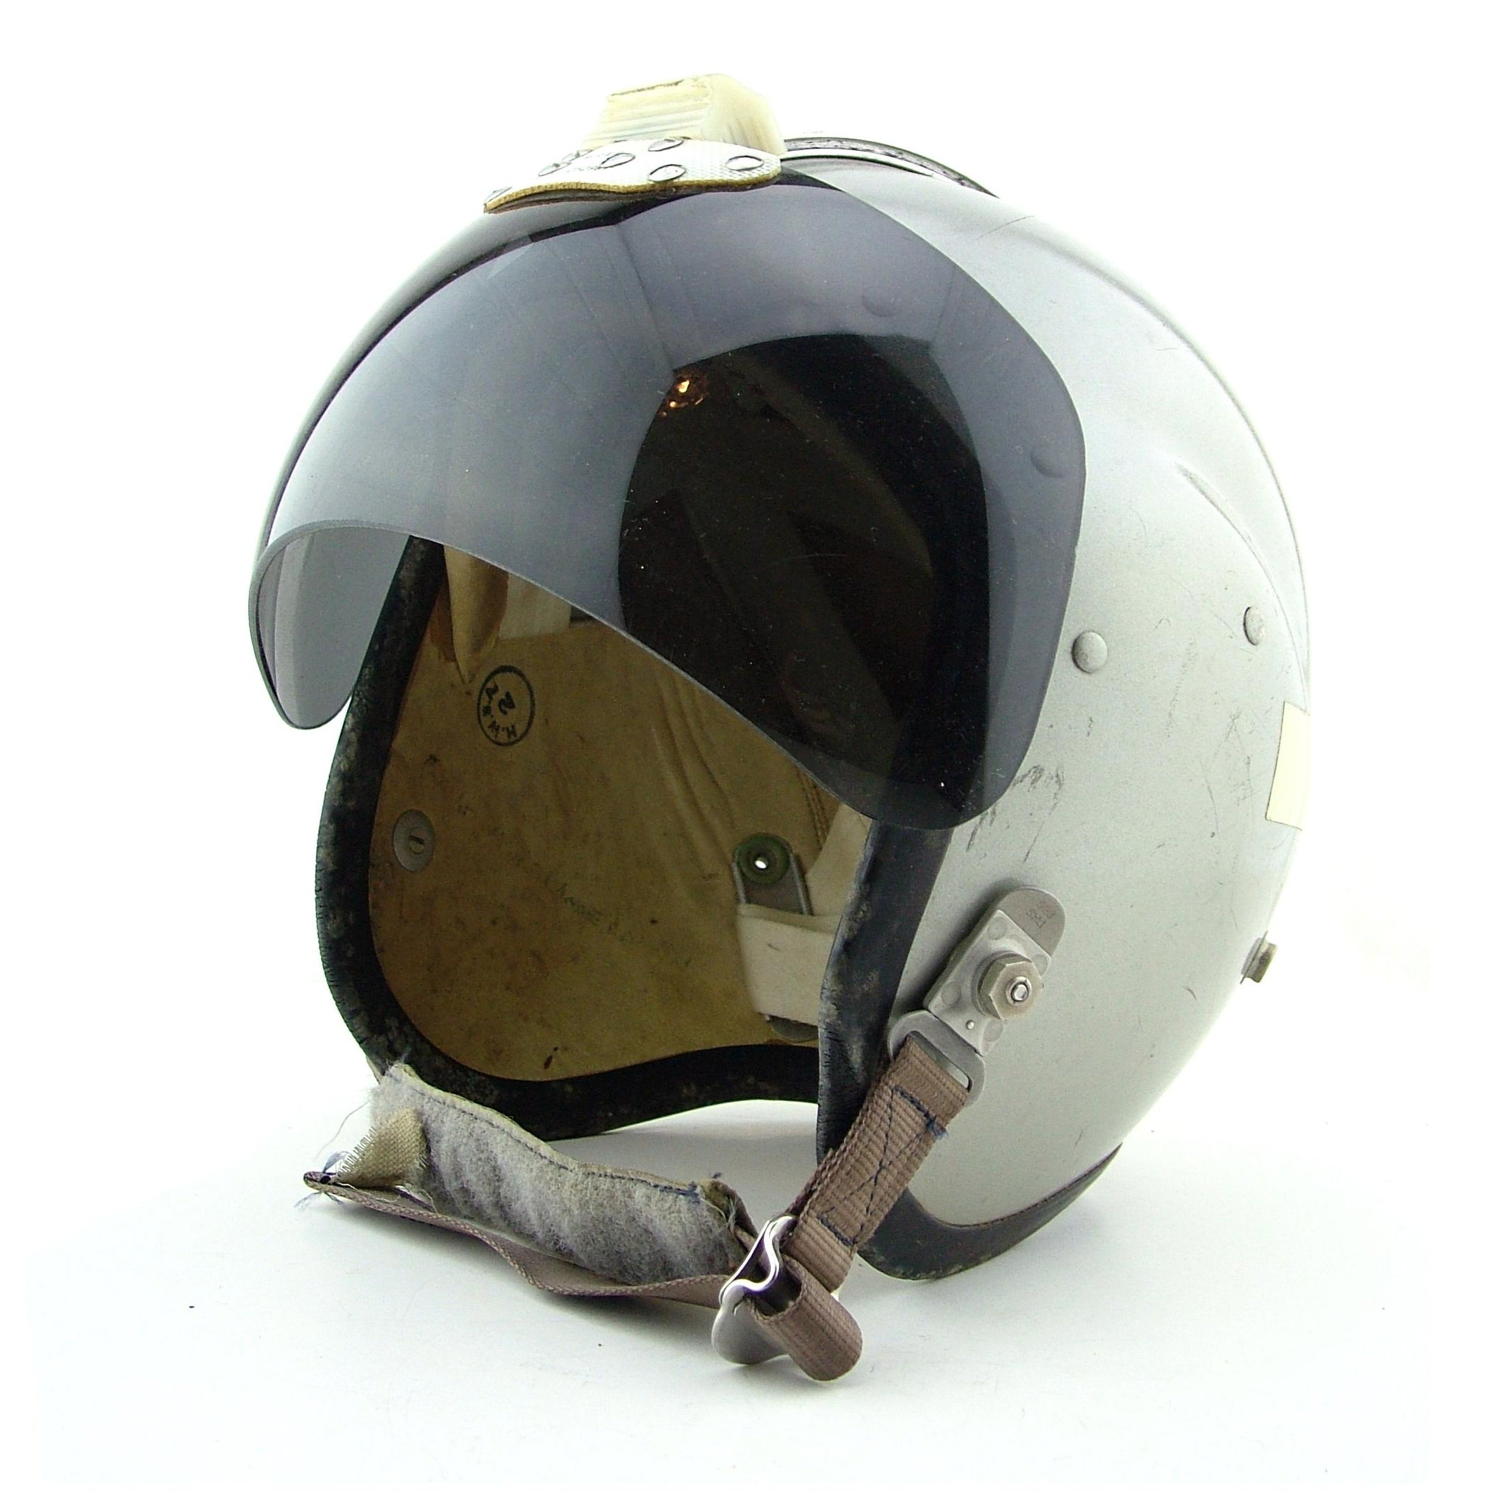 RAF MK.1A (R) flying helmet